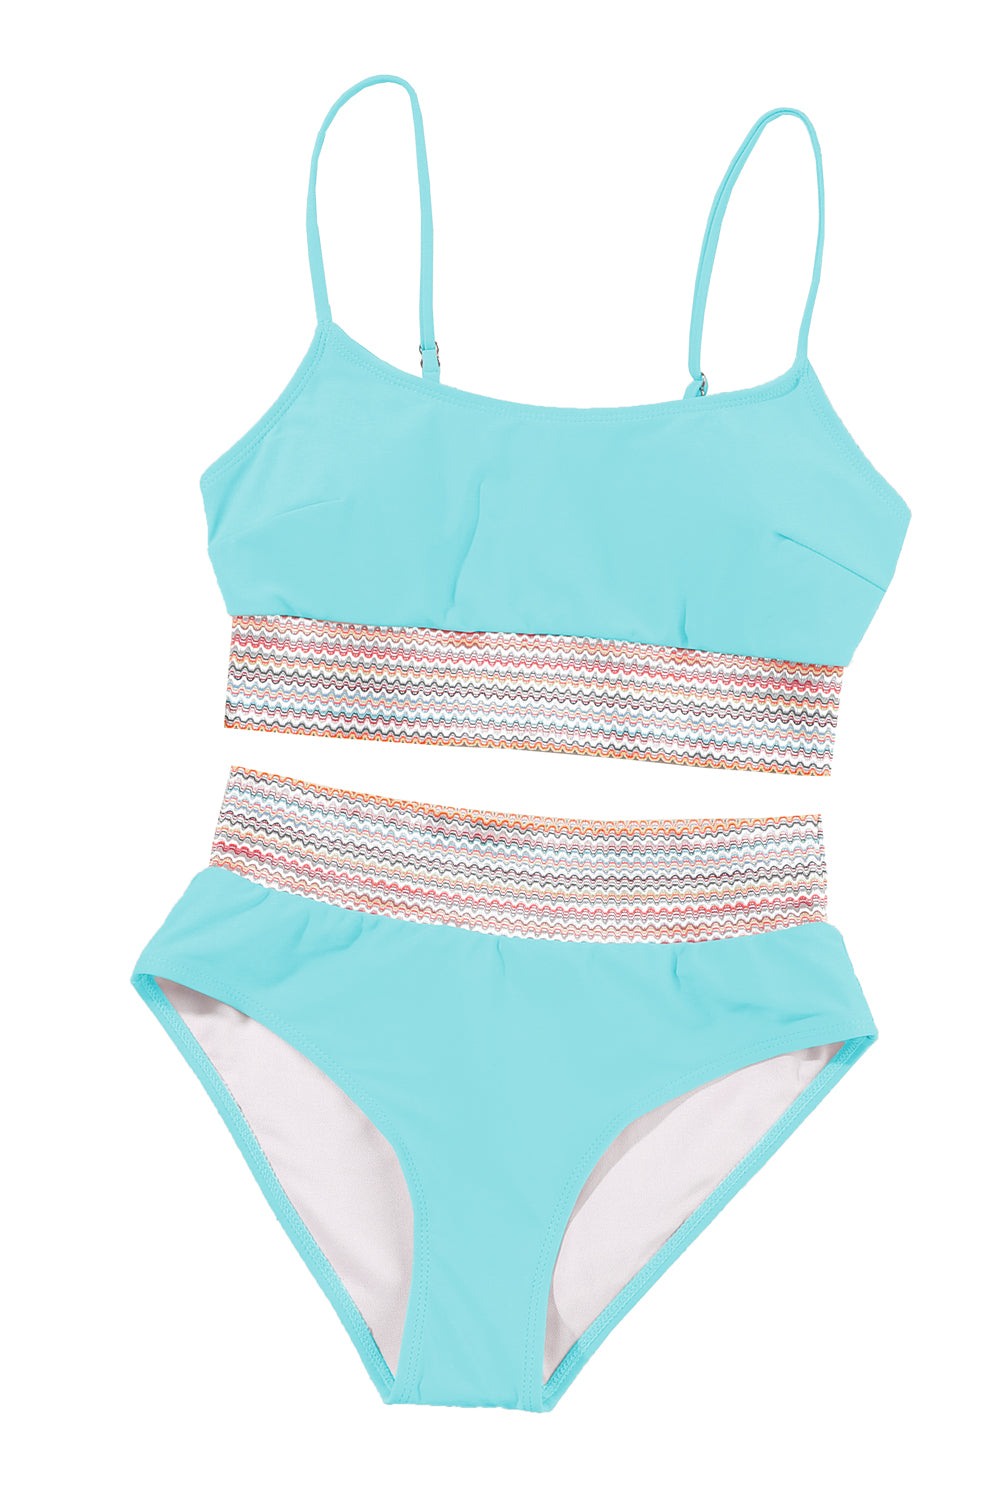 Costume da bagno bikini a vita alta con cinturino per spaghetti patchwork a righe blu cielo